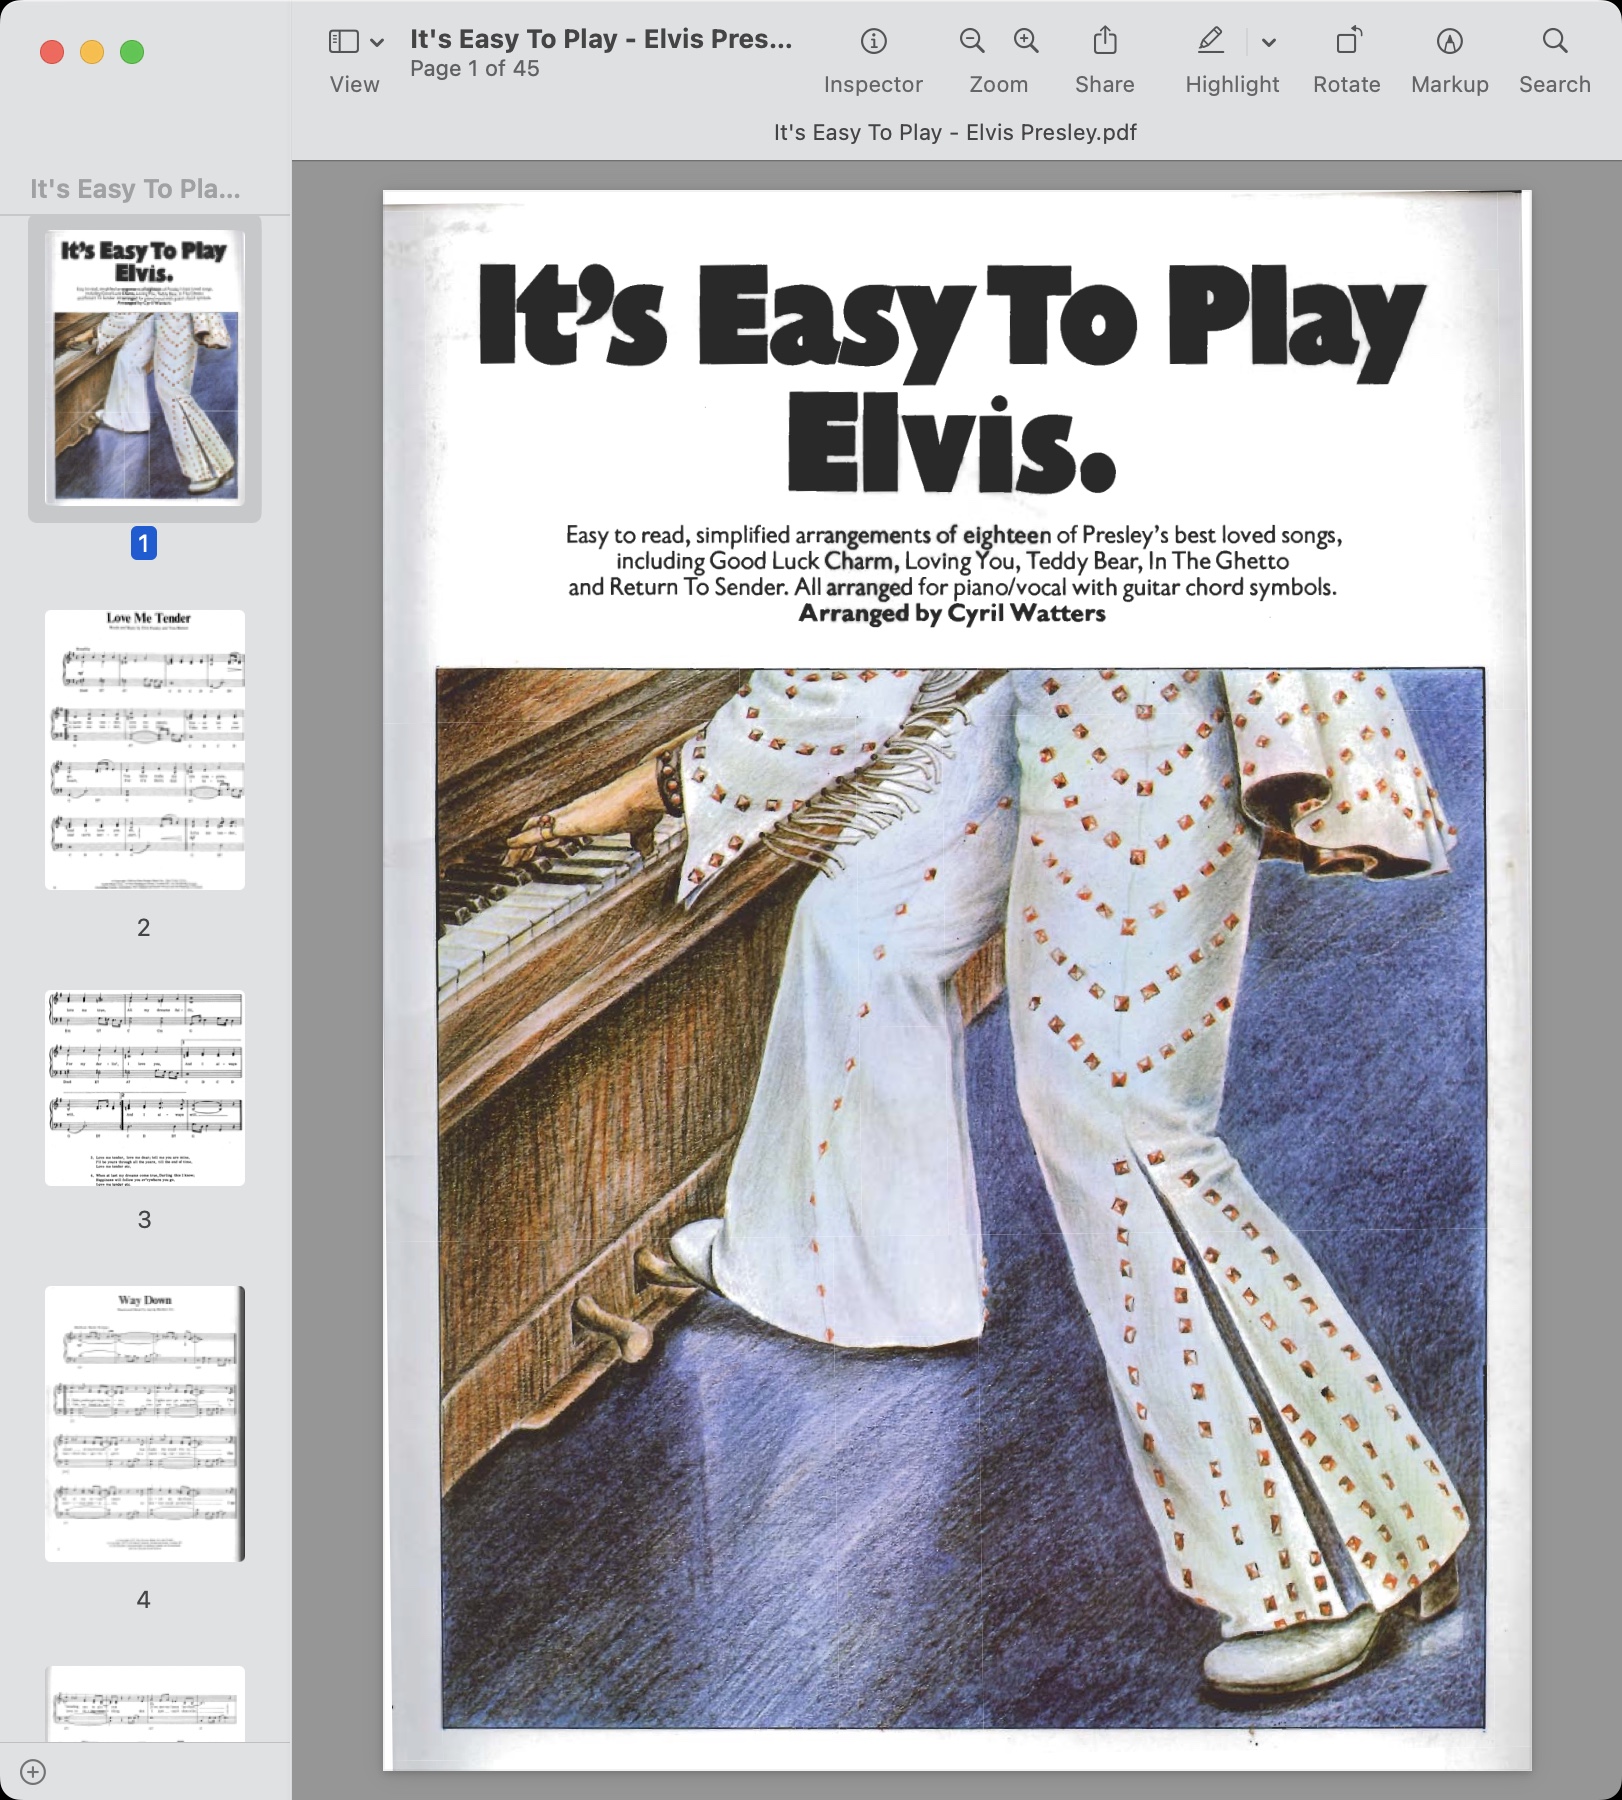 It's Easy To Play - Elvis Presley.jpg